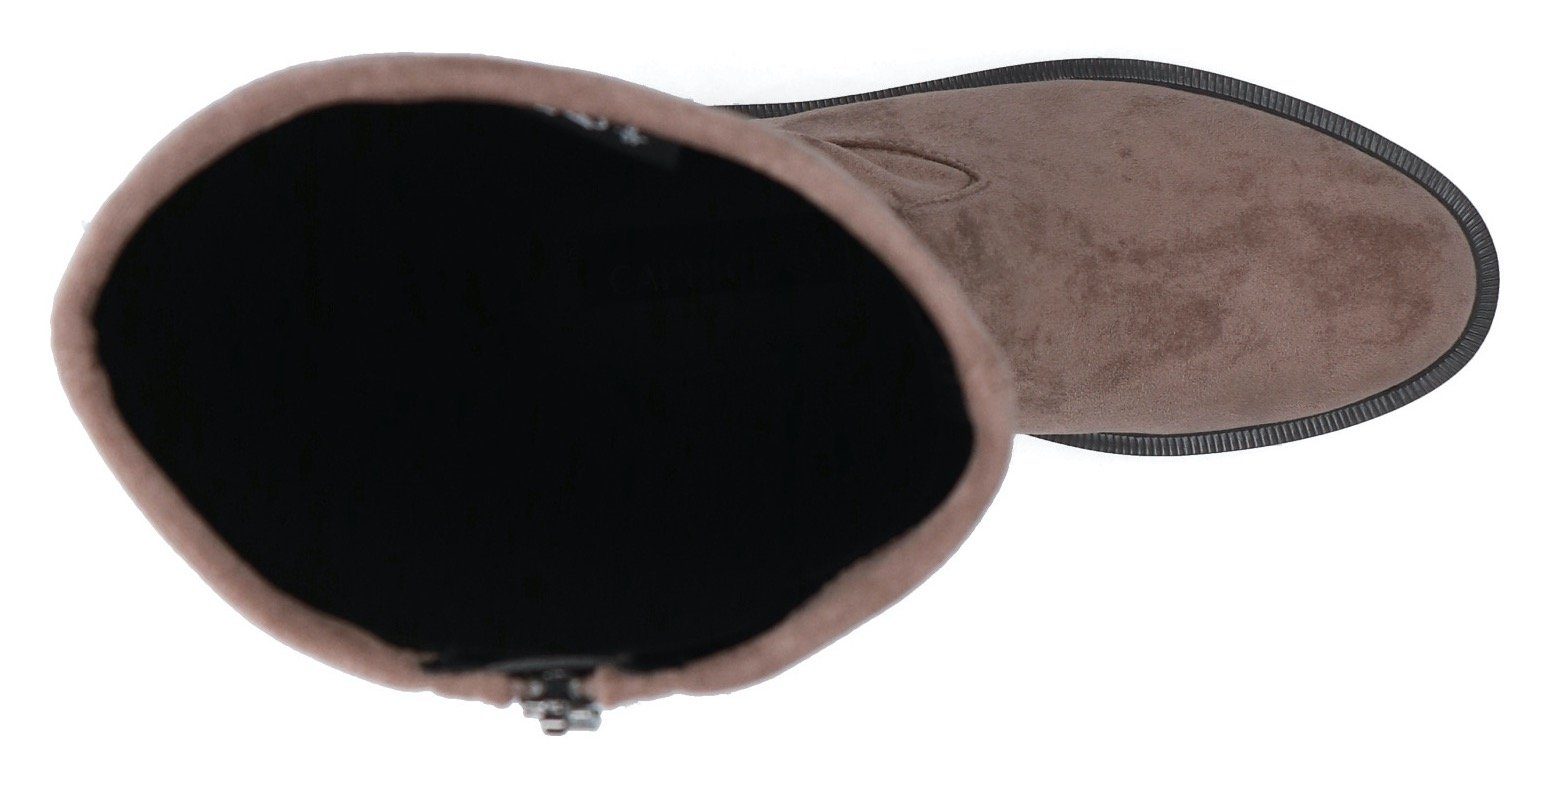 Caprice XS-Schaft ausgestattet, Stiefel mit taupe MemoryFoam